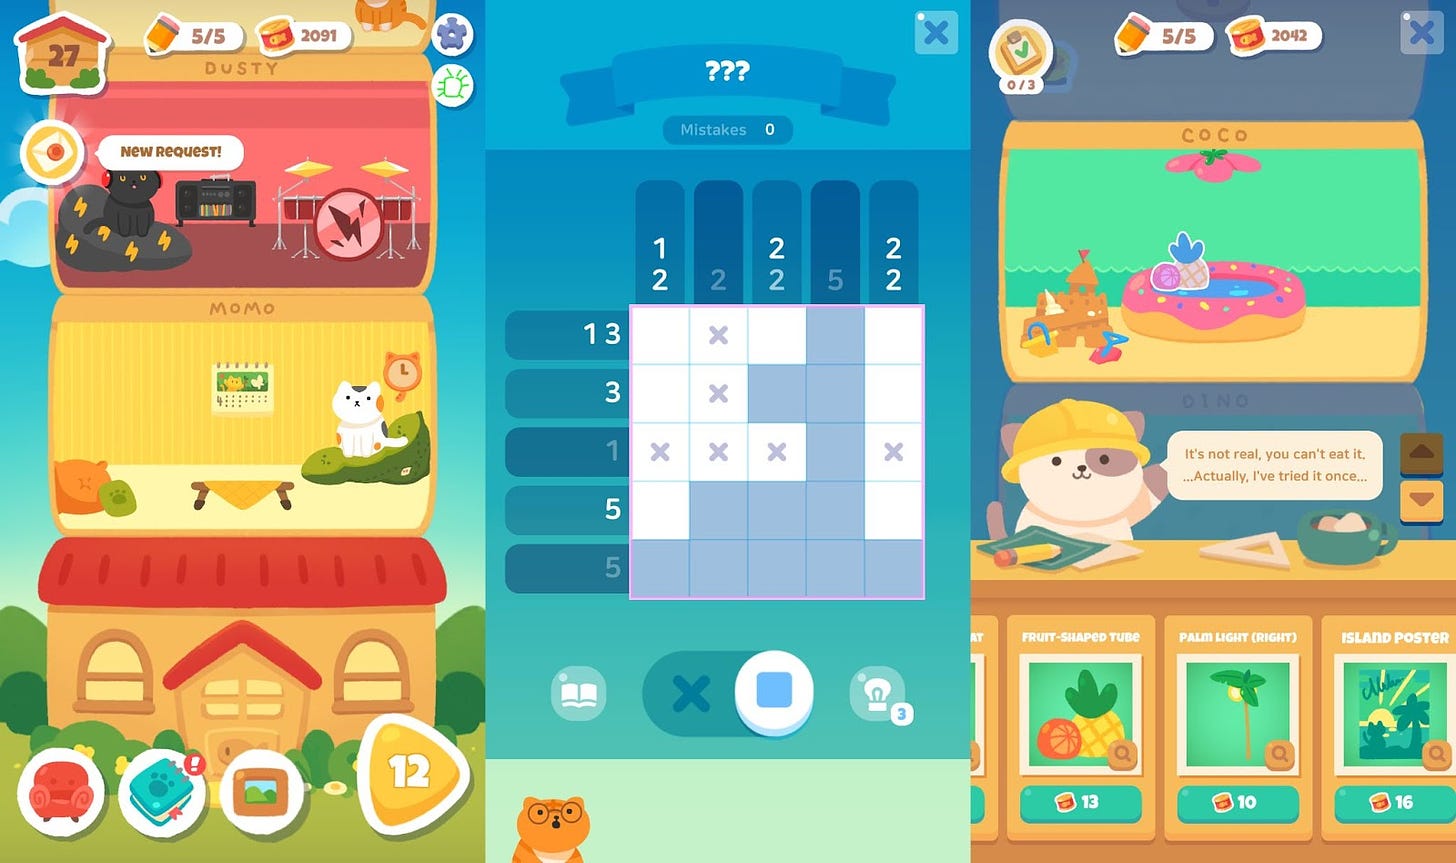 Telas de Meow Tower: Nonogram. A esquerda, a tela principal do jogo, com a torre e botões para iniciar os puzzles. No centro, a tela de nonograma, com um puzzle feito pela metade. A direita, a tela de compra de itens, com opções na parte inferior e o quarto em destaque no topo.